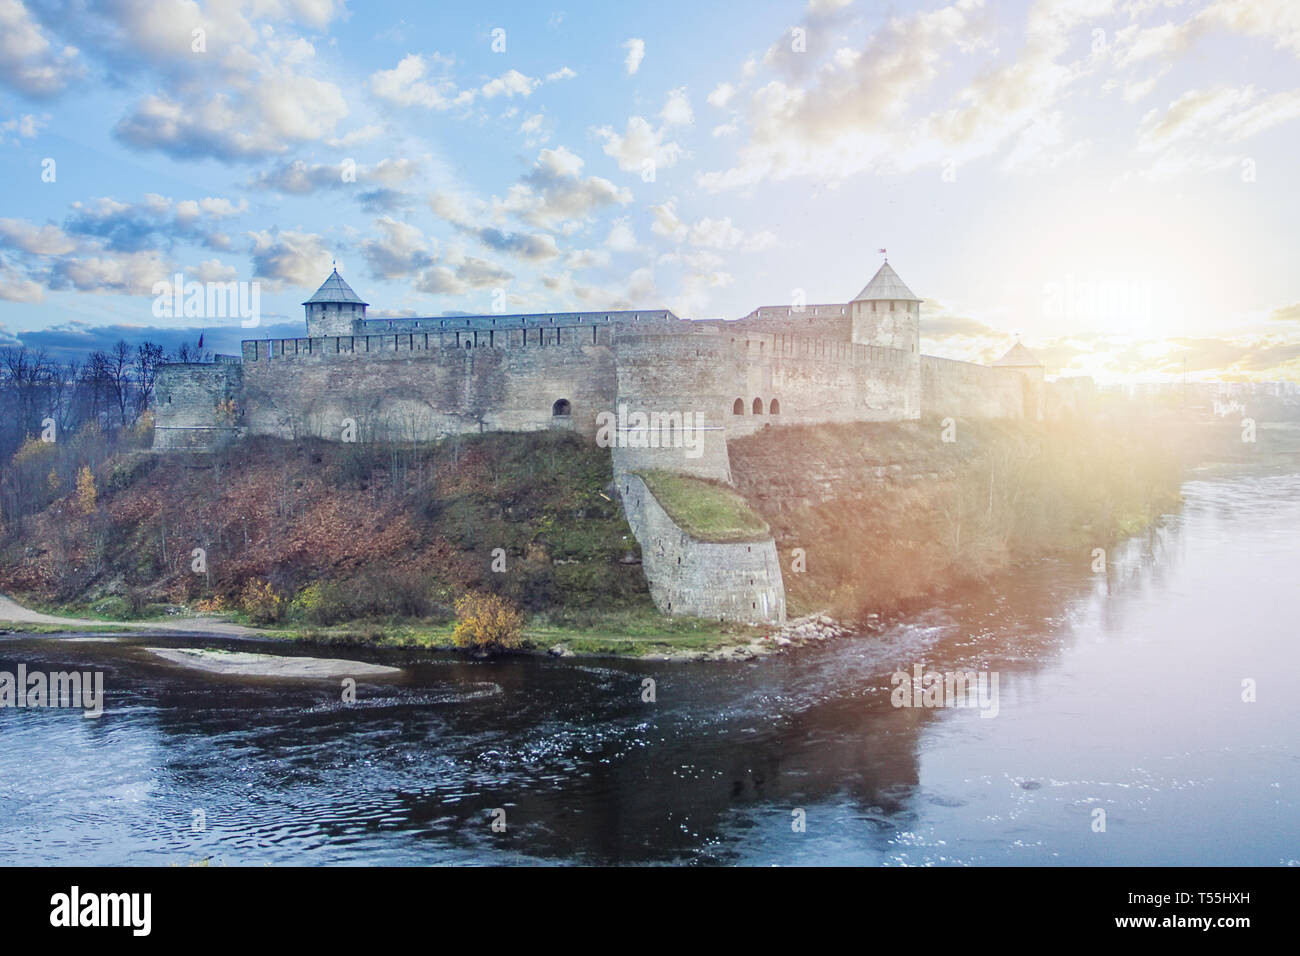 Ivangorod ville et Narva, la Russie. Ancienne forteresse et château, monument russe Banque D'Images